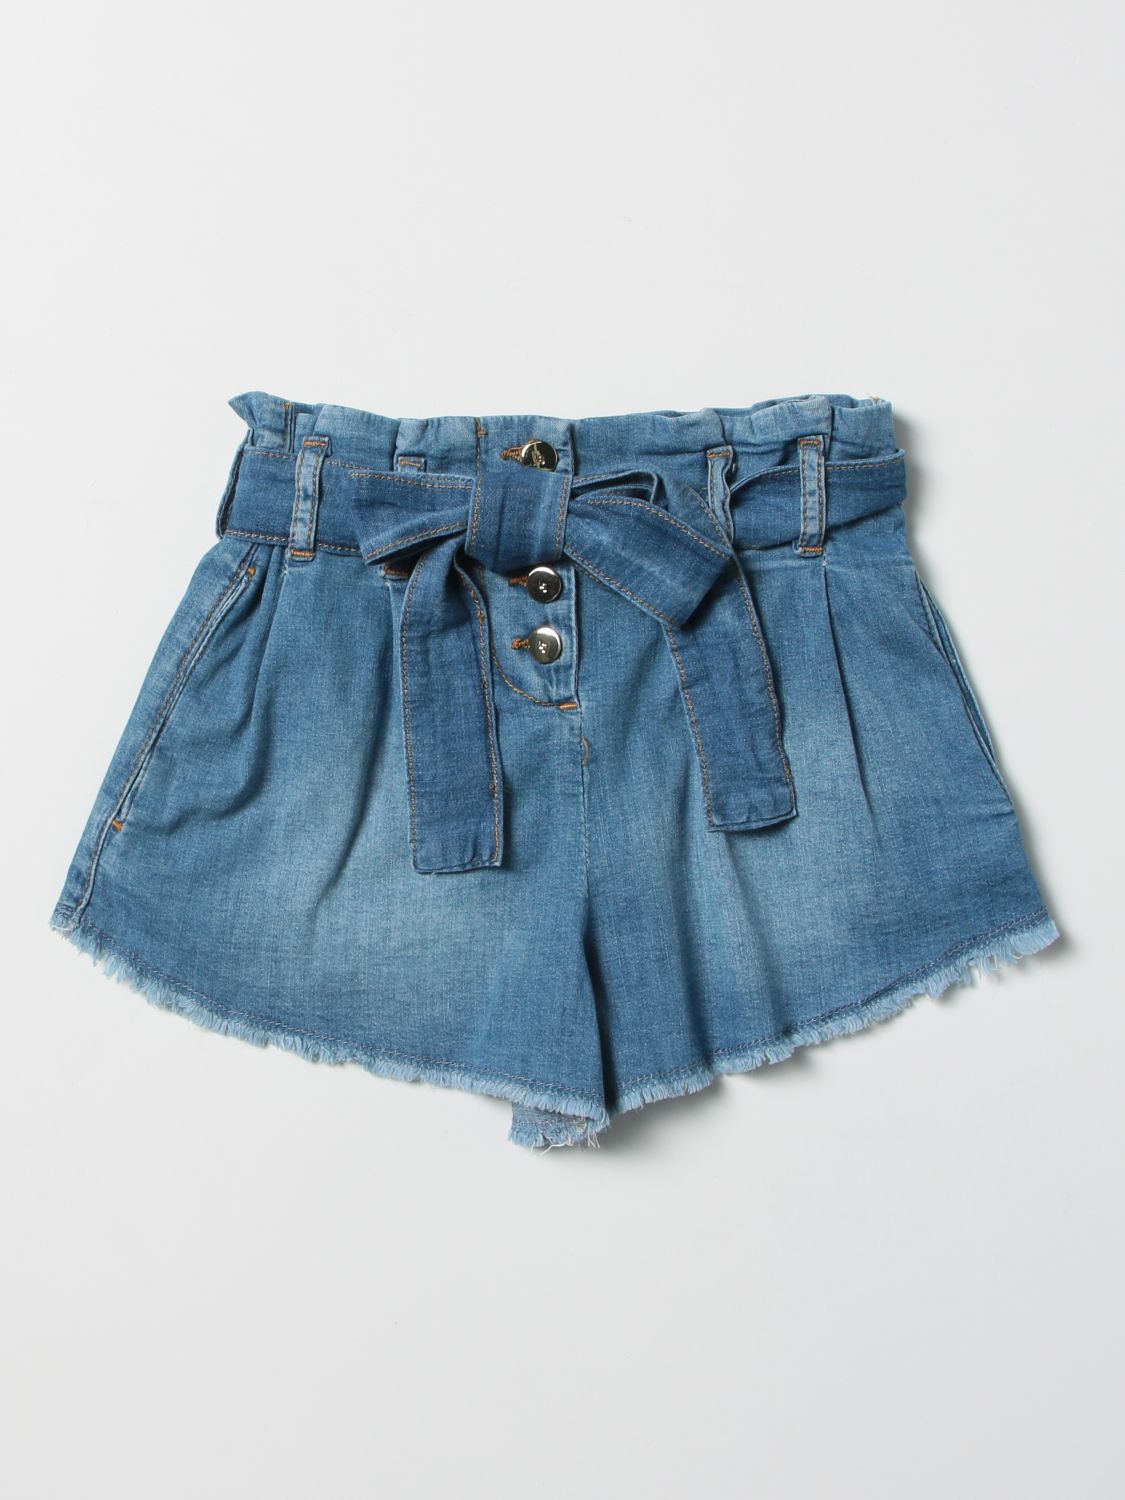 Outlet de Jo: Pantalones cortos para niña, Denim | Pantalones Jo GA2169D4680 en línea en GIGLIO.COM